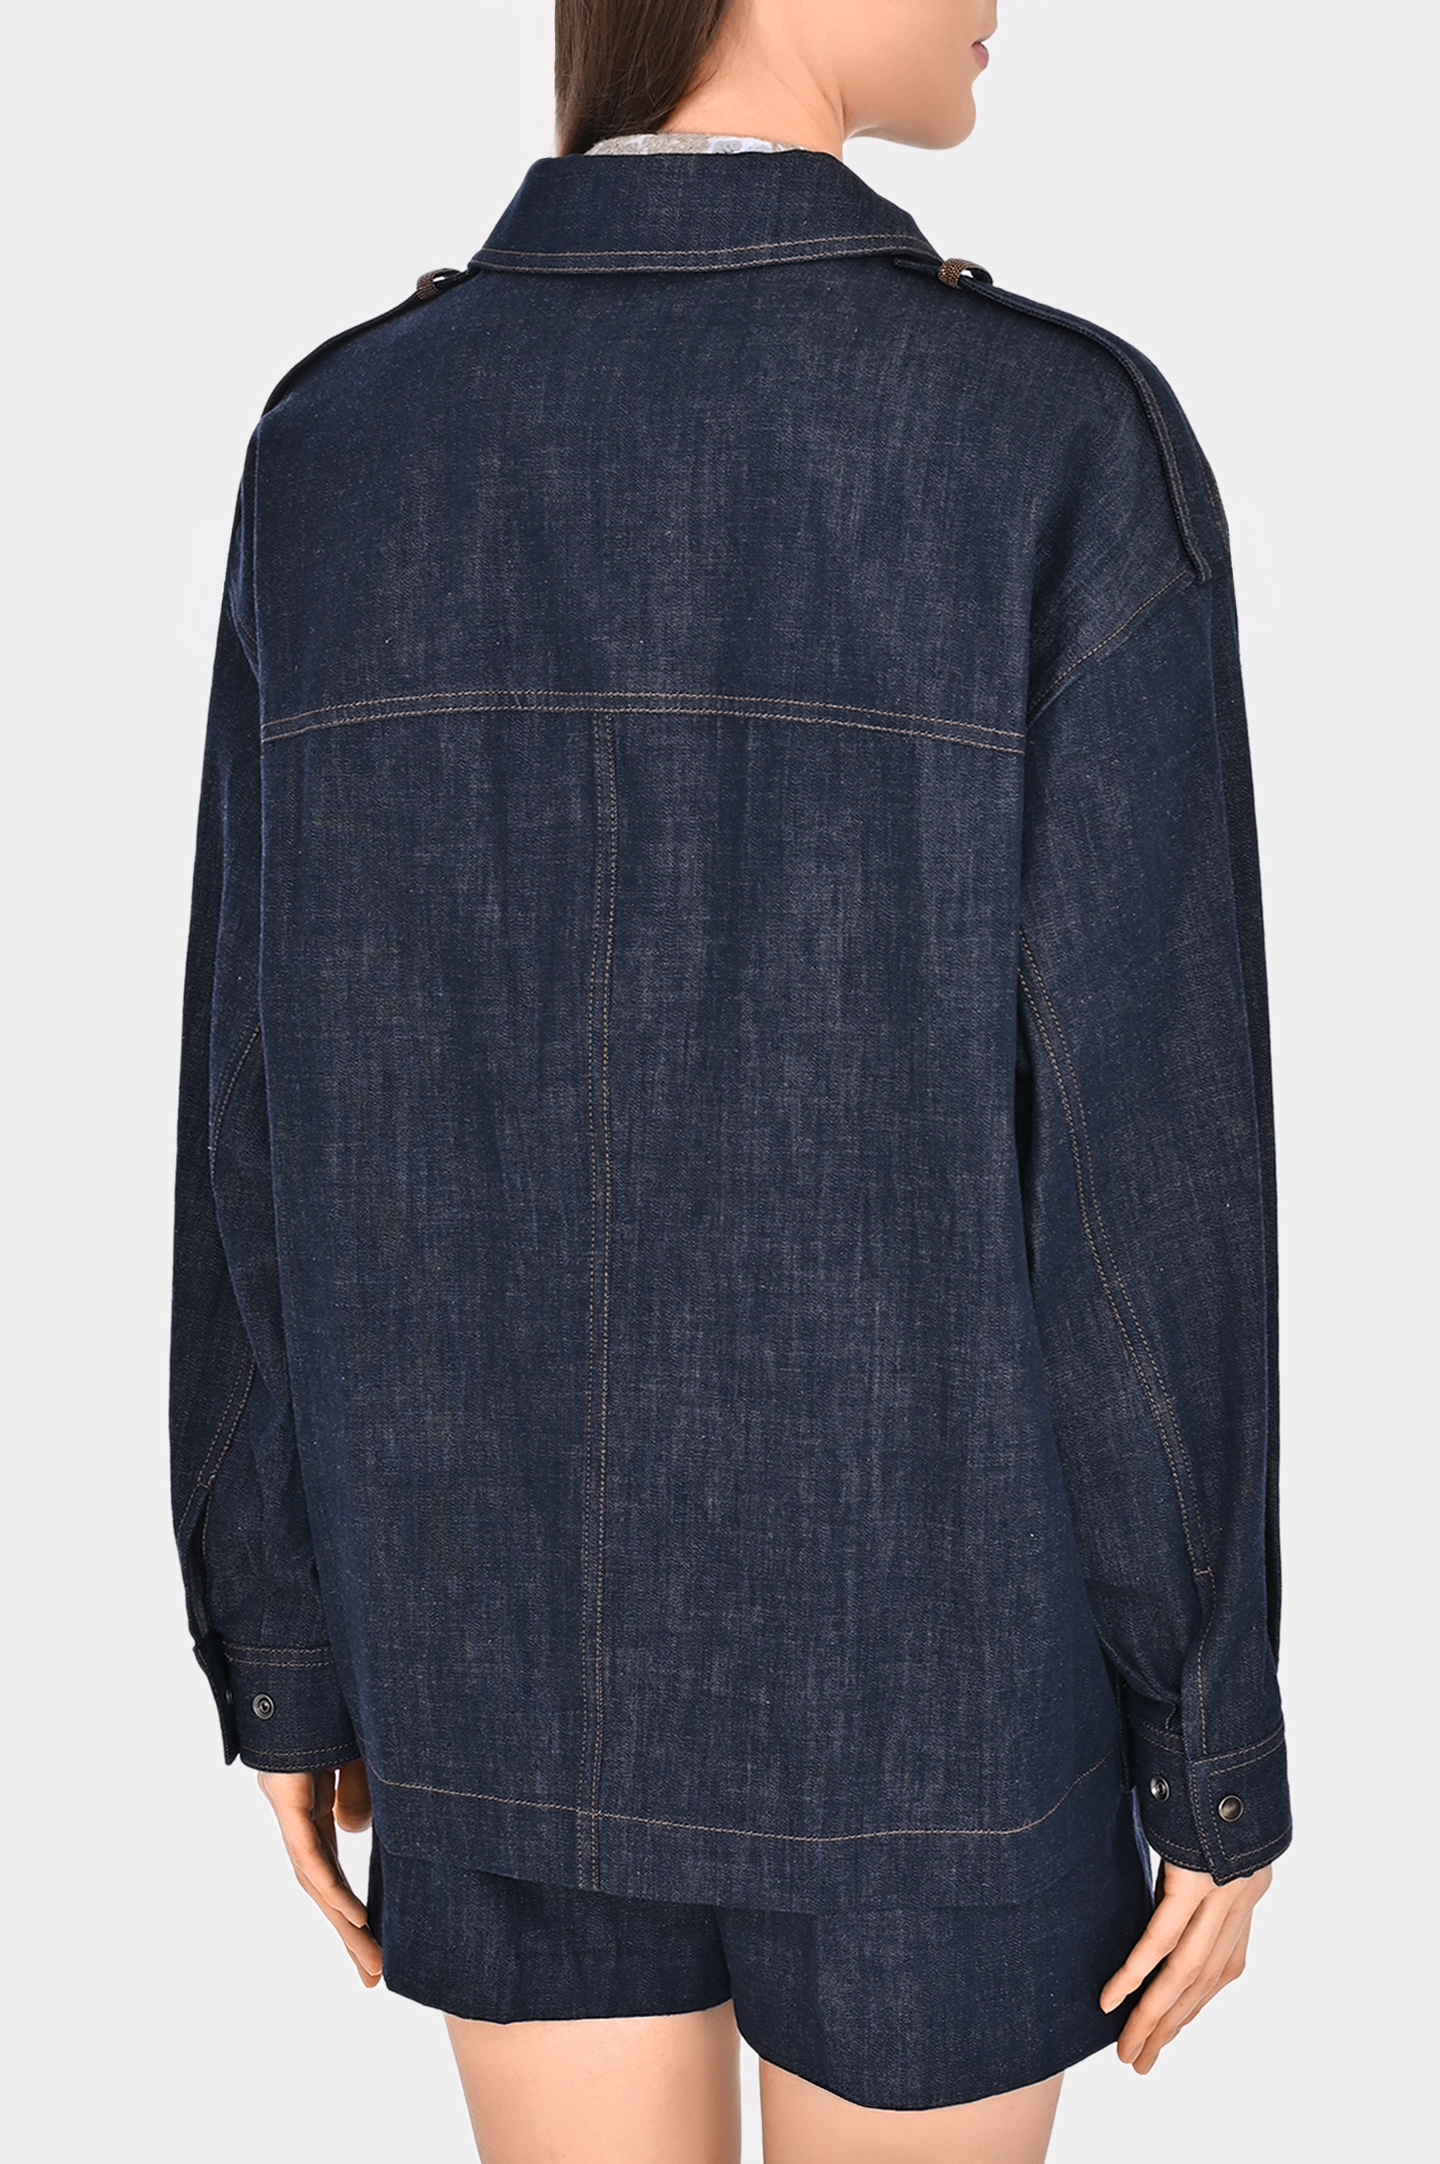 Джинсовая куртка с карманами BRUNELLO  CUCINELLI M0F28EL926, цвет: Темно-синий, Женский